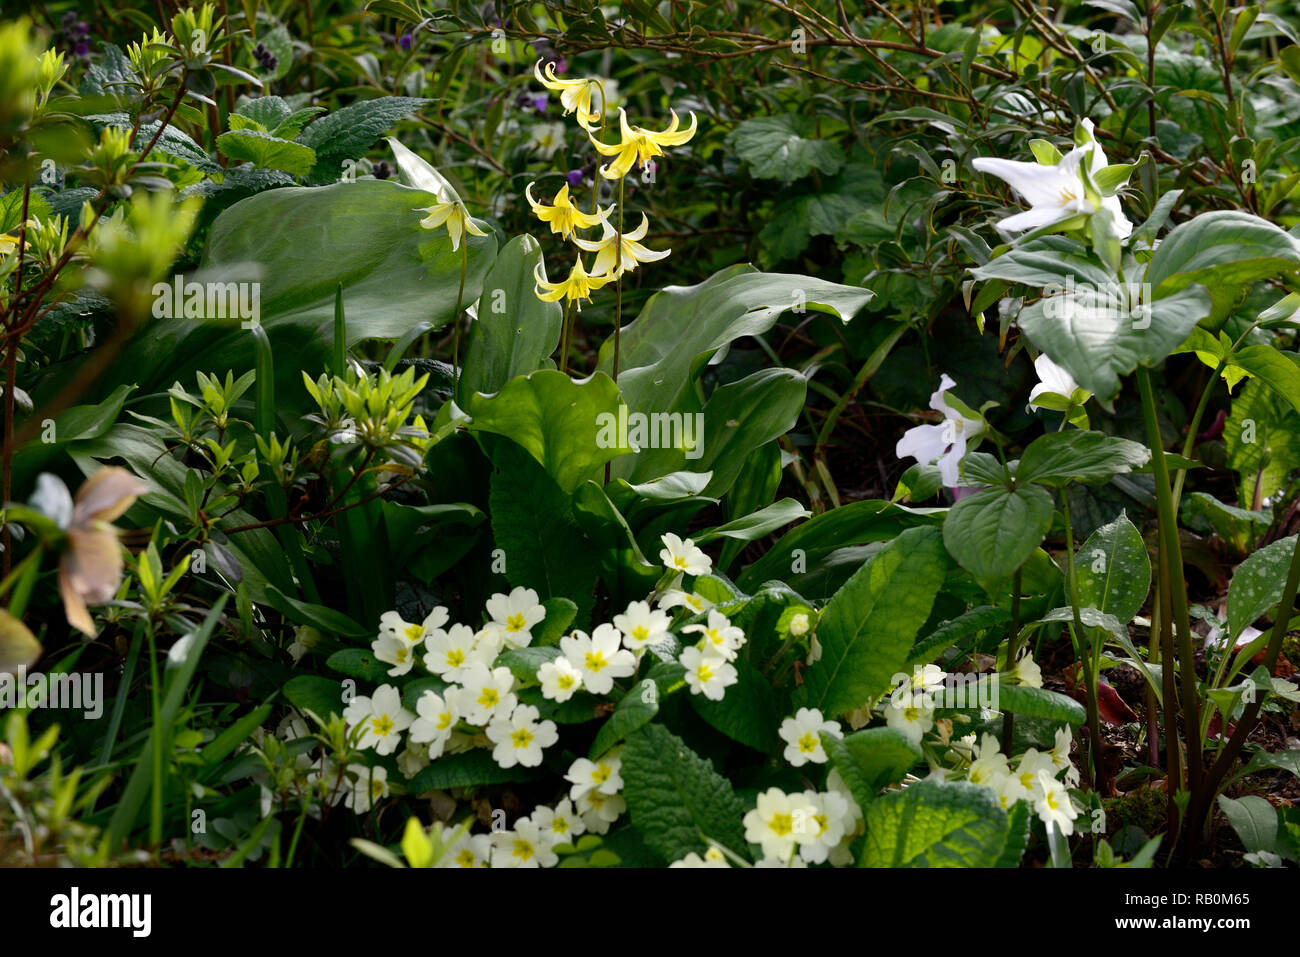 Primula vulgaris,erythronium pagoda,trillium grandiflorum,primrose primevère,jaune,blanc,crème,fleurs,fleurs,fleurs,printemps,jardins,jardin,,ombre,s Banque D'Images